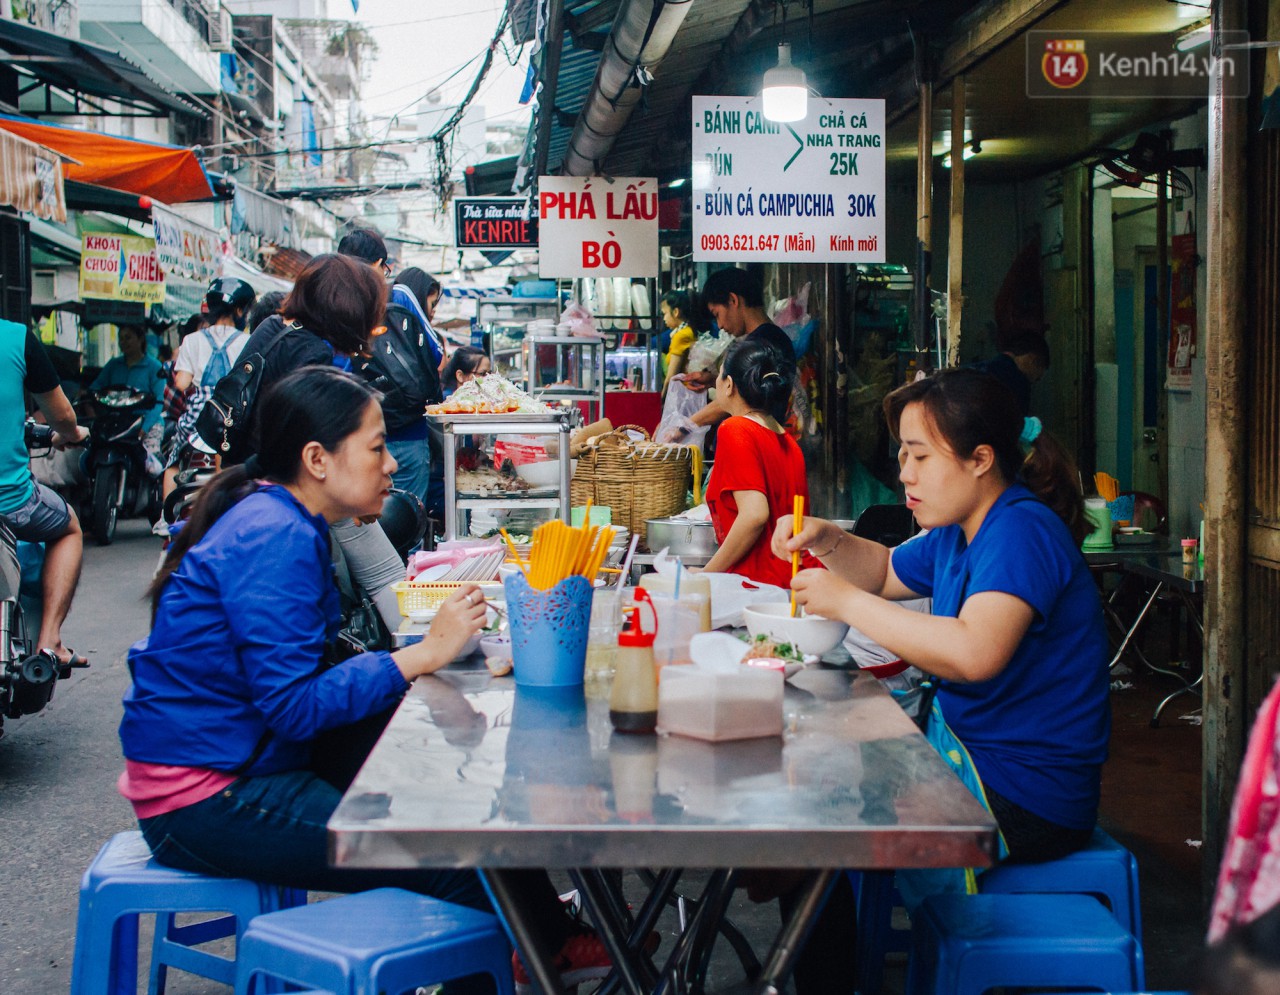 Chùm ảnh: Ở Sài Gòn, có một khu chợ mang tên Campuchia nằm trong hẻm nhỏ nhưng hội tụ đủ hàng ăn thức uống các vùng miền - Ảnh 11.